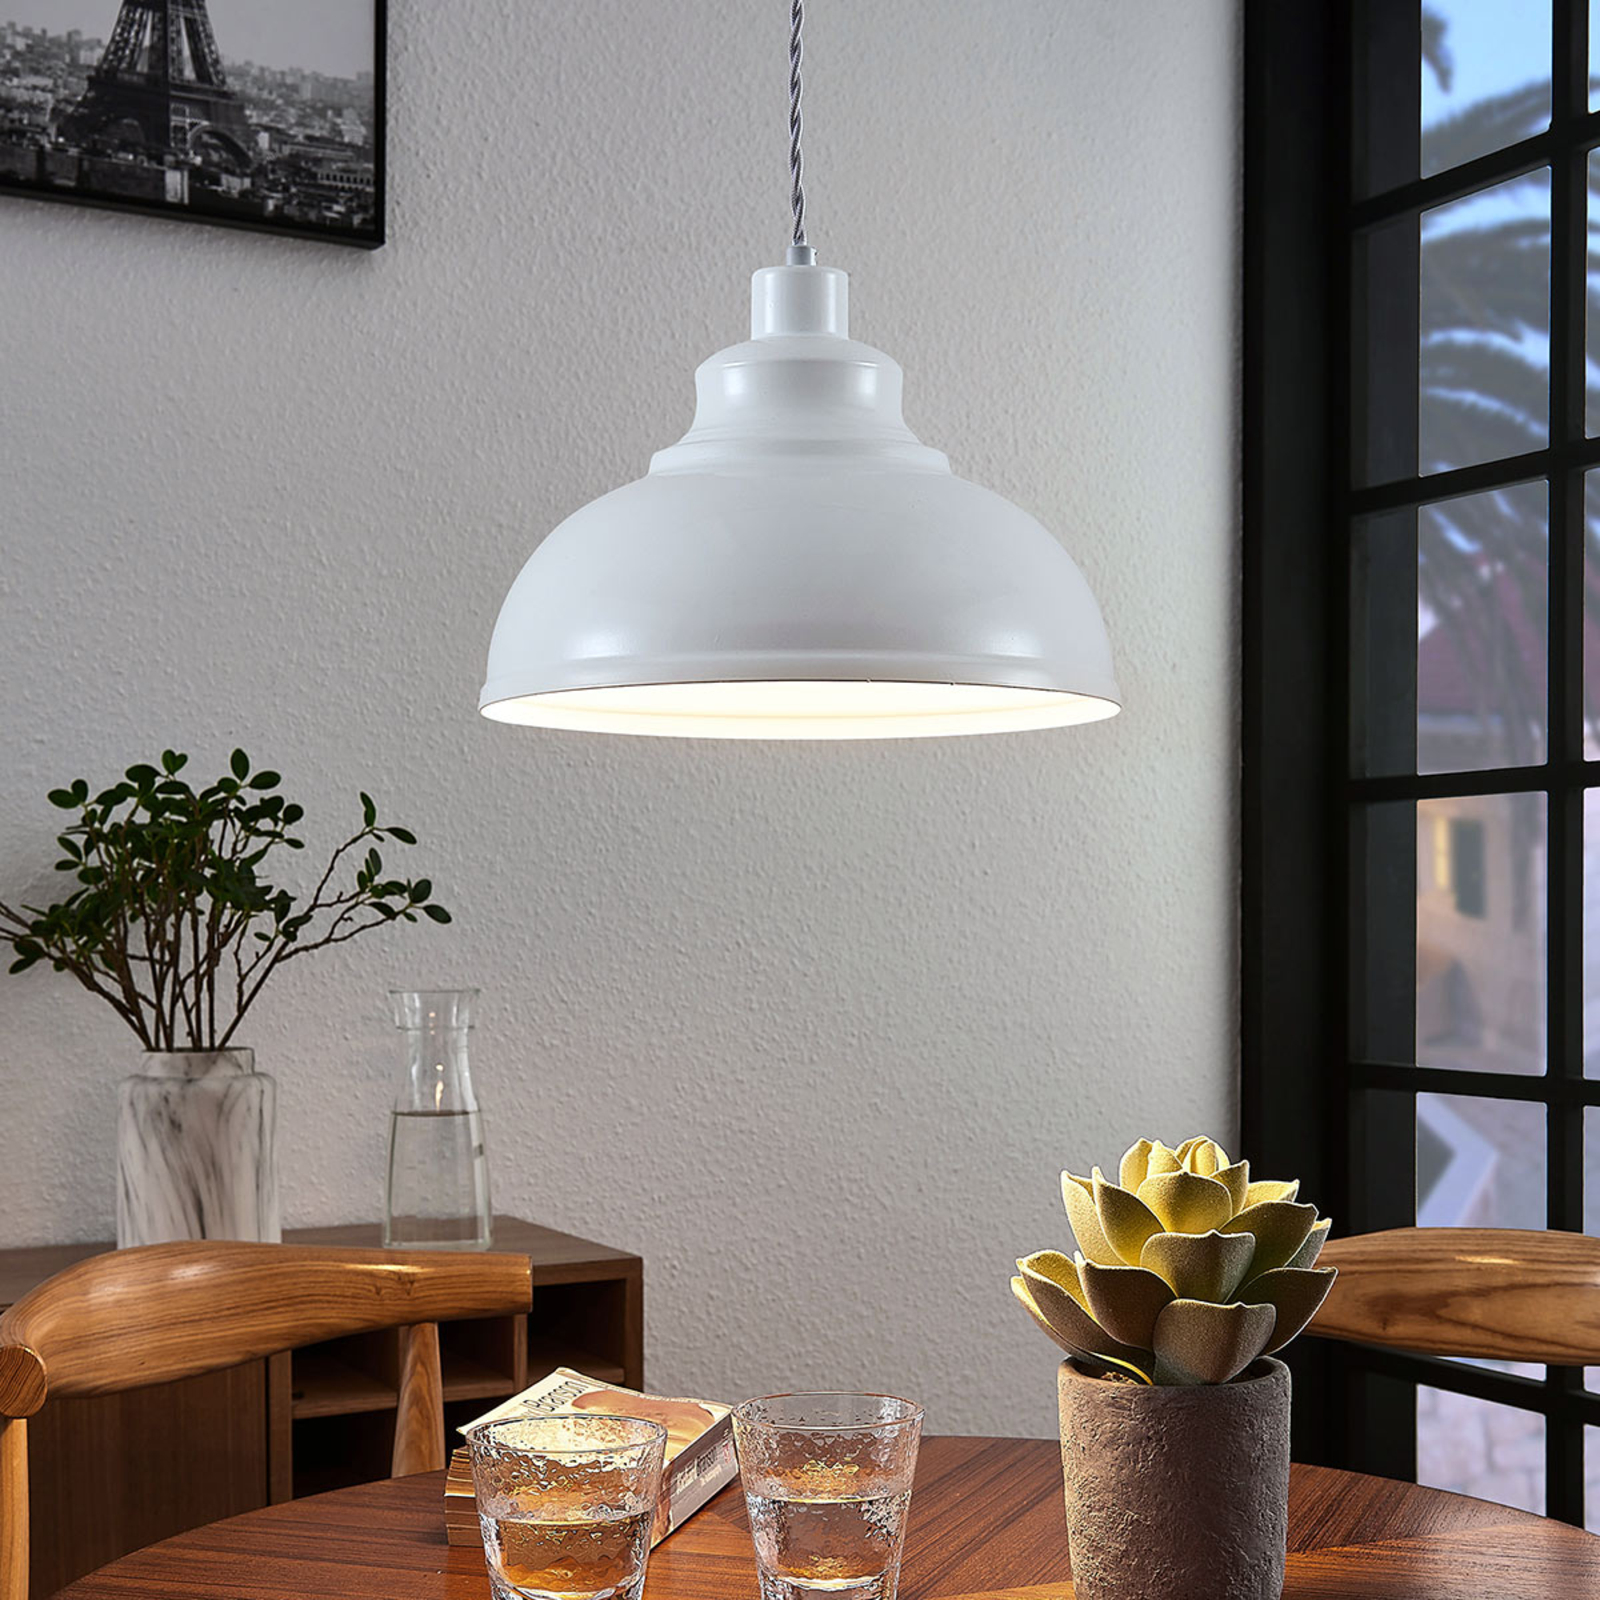 Moedig Gewoon Site lijn Vintage hanglamp Albertine, metaal, wit | Lampen24.nl